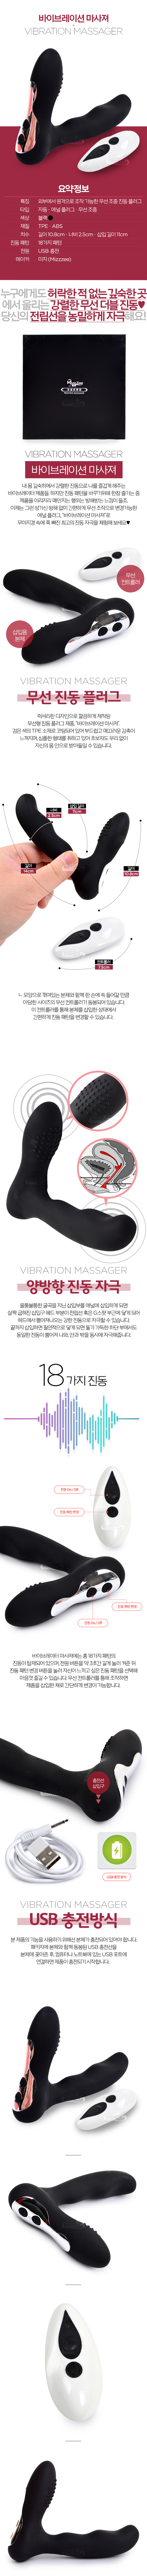 [18단 무선 진동] 바이브레이션 마사져(Vibration Massager)